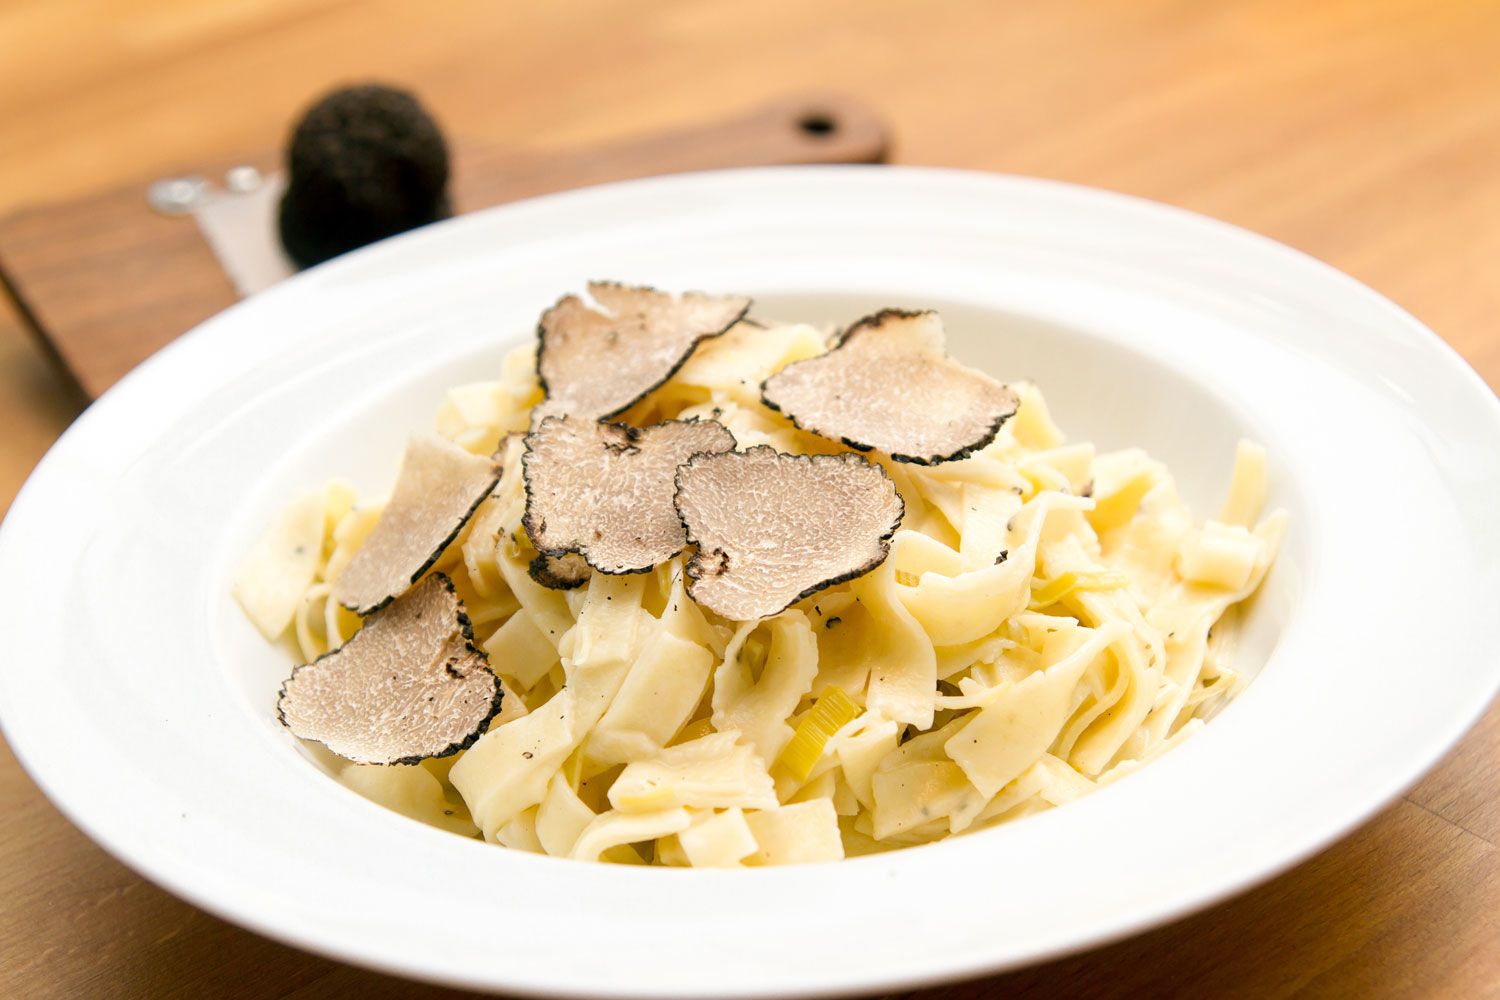 It's truffle season in Italy.